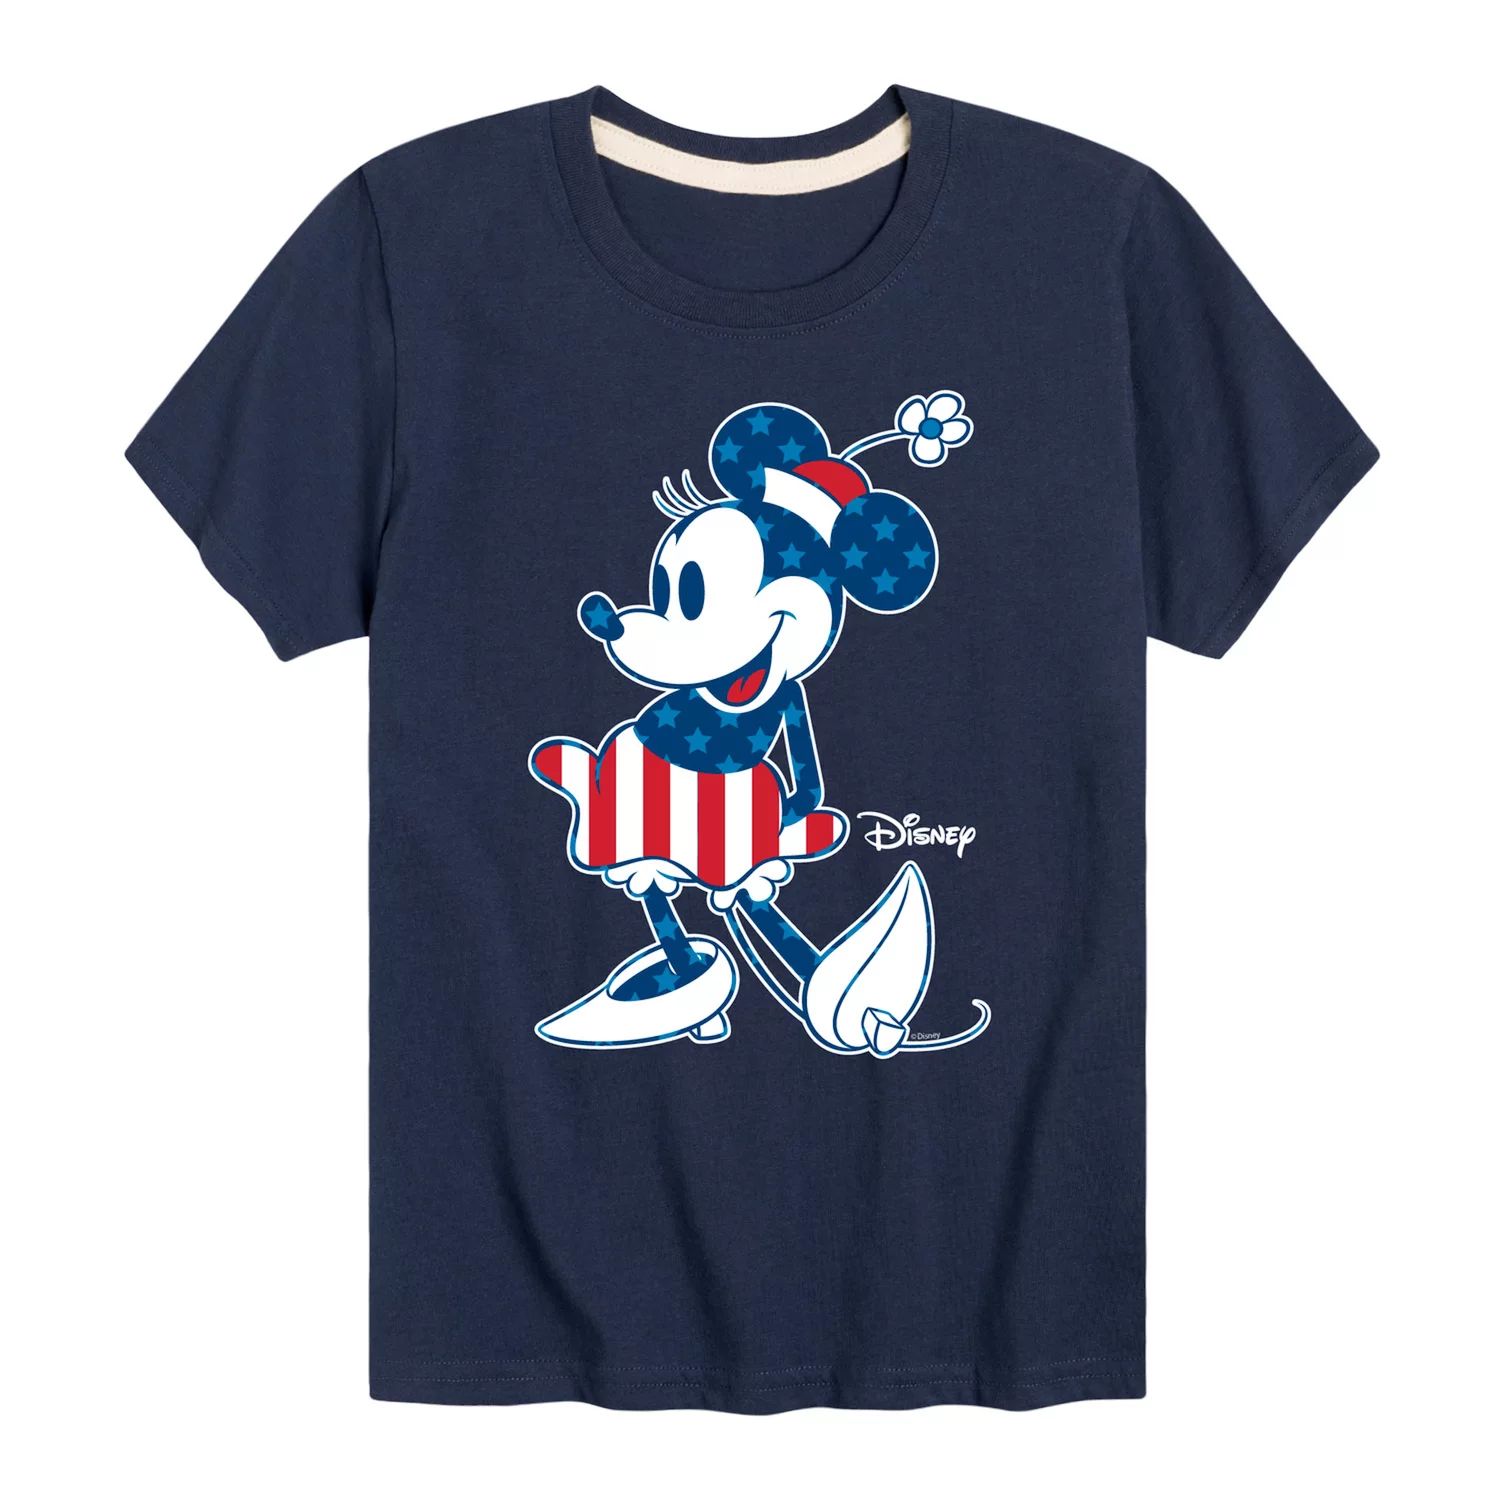 Футболка с рисунком флага Disney для мальчиков 8–20 лет и Минни Маус с графическим рисунком Disney базовая футболка disney с логотипом disney для мальчиков 8–20 лет и графическим рисунком disney